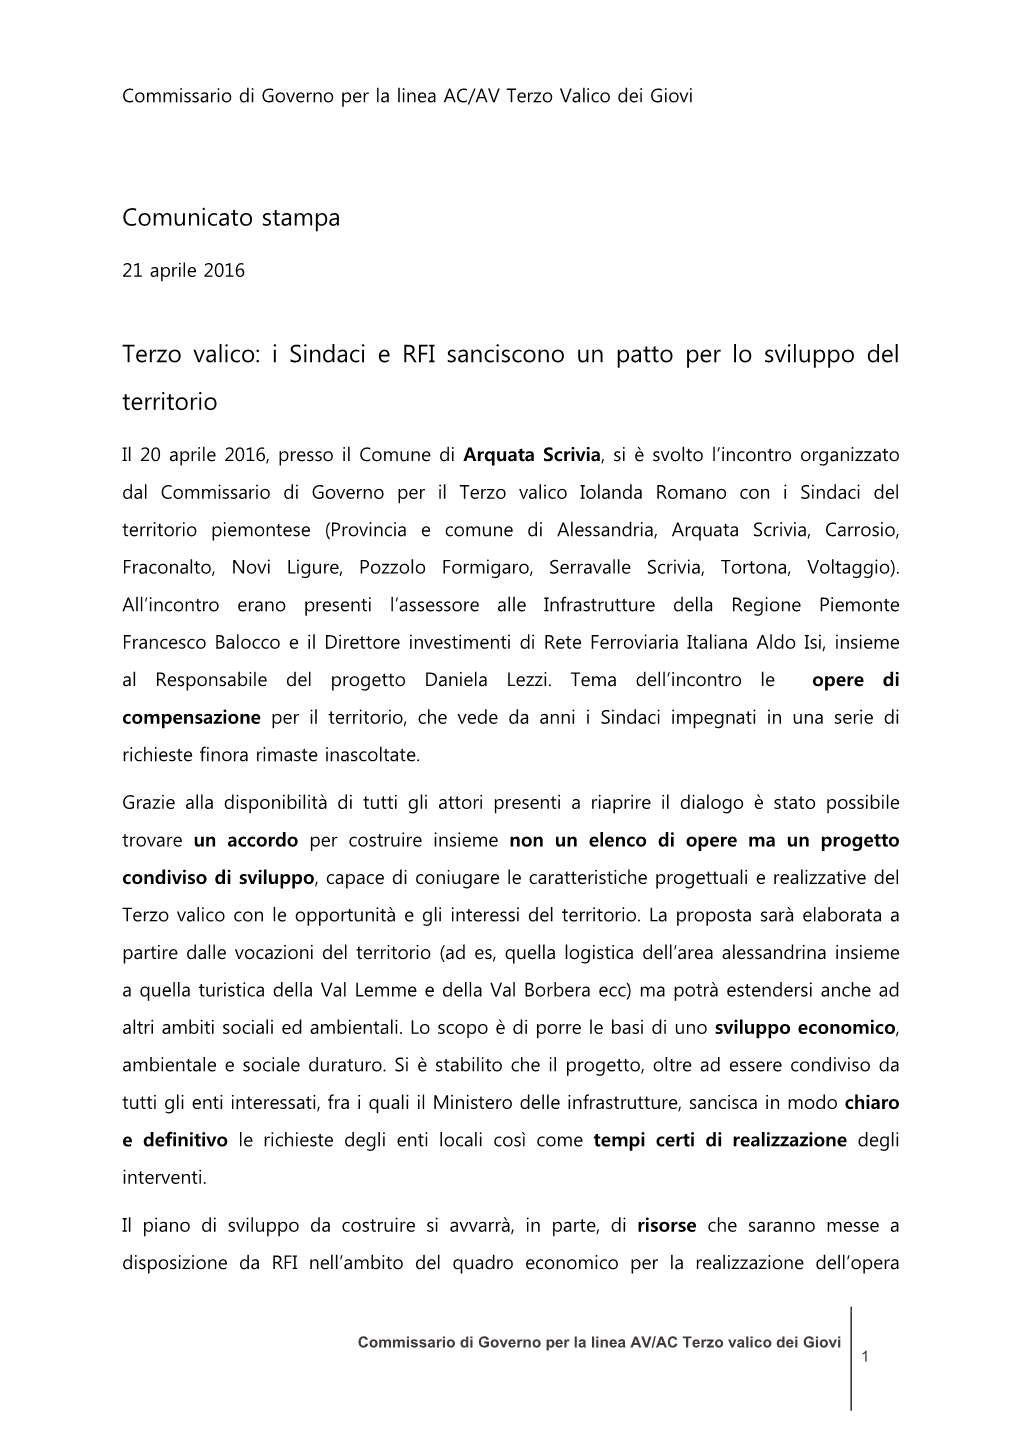 Comunicato Stampa ROMANO 21-4-16